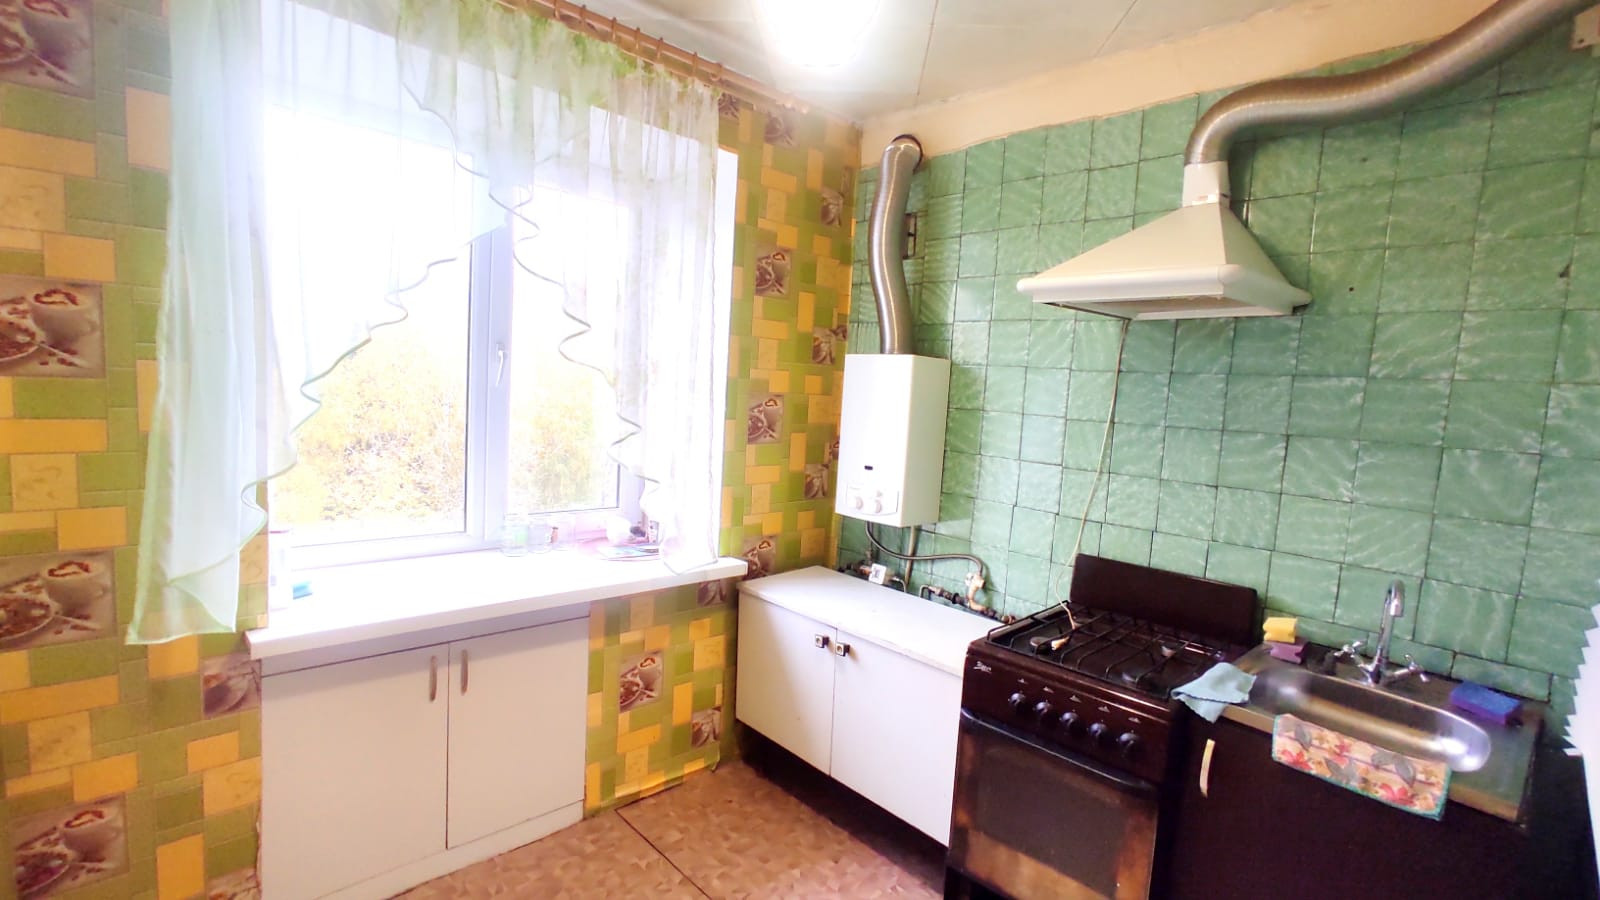 Купить квартиру в белорецке. Купить 1 комнатную квартиру в Белорецке свежие объявления.